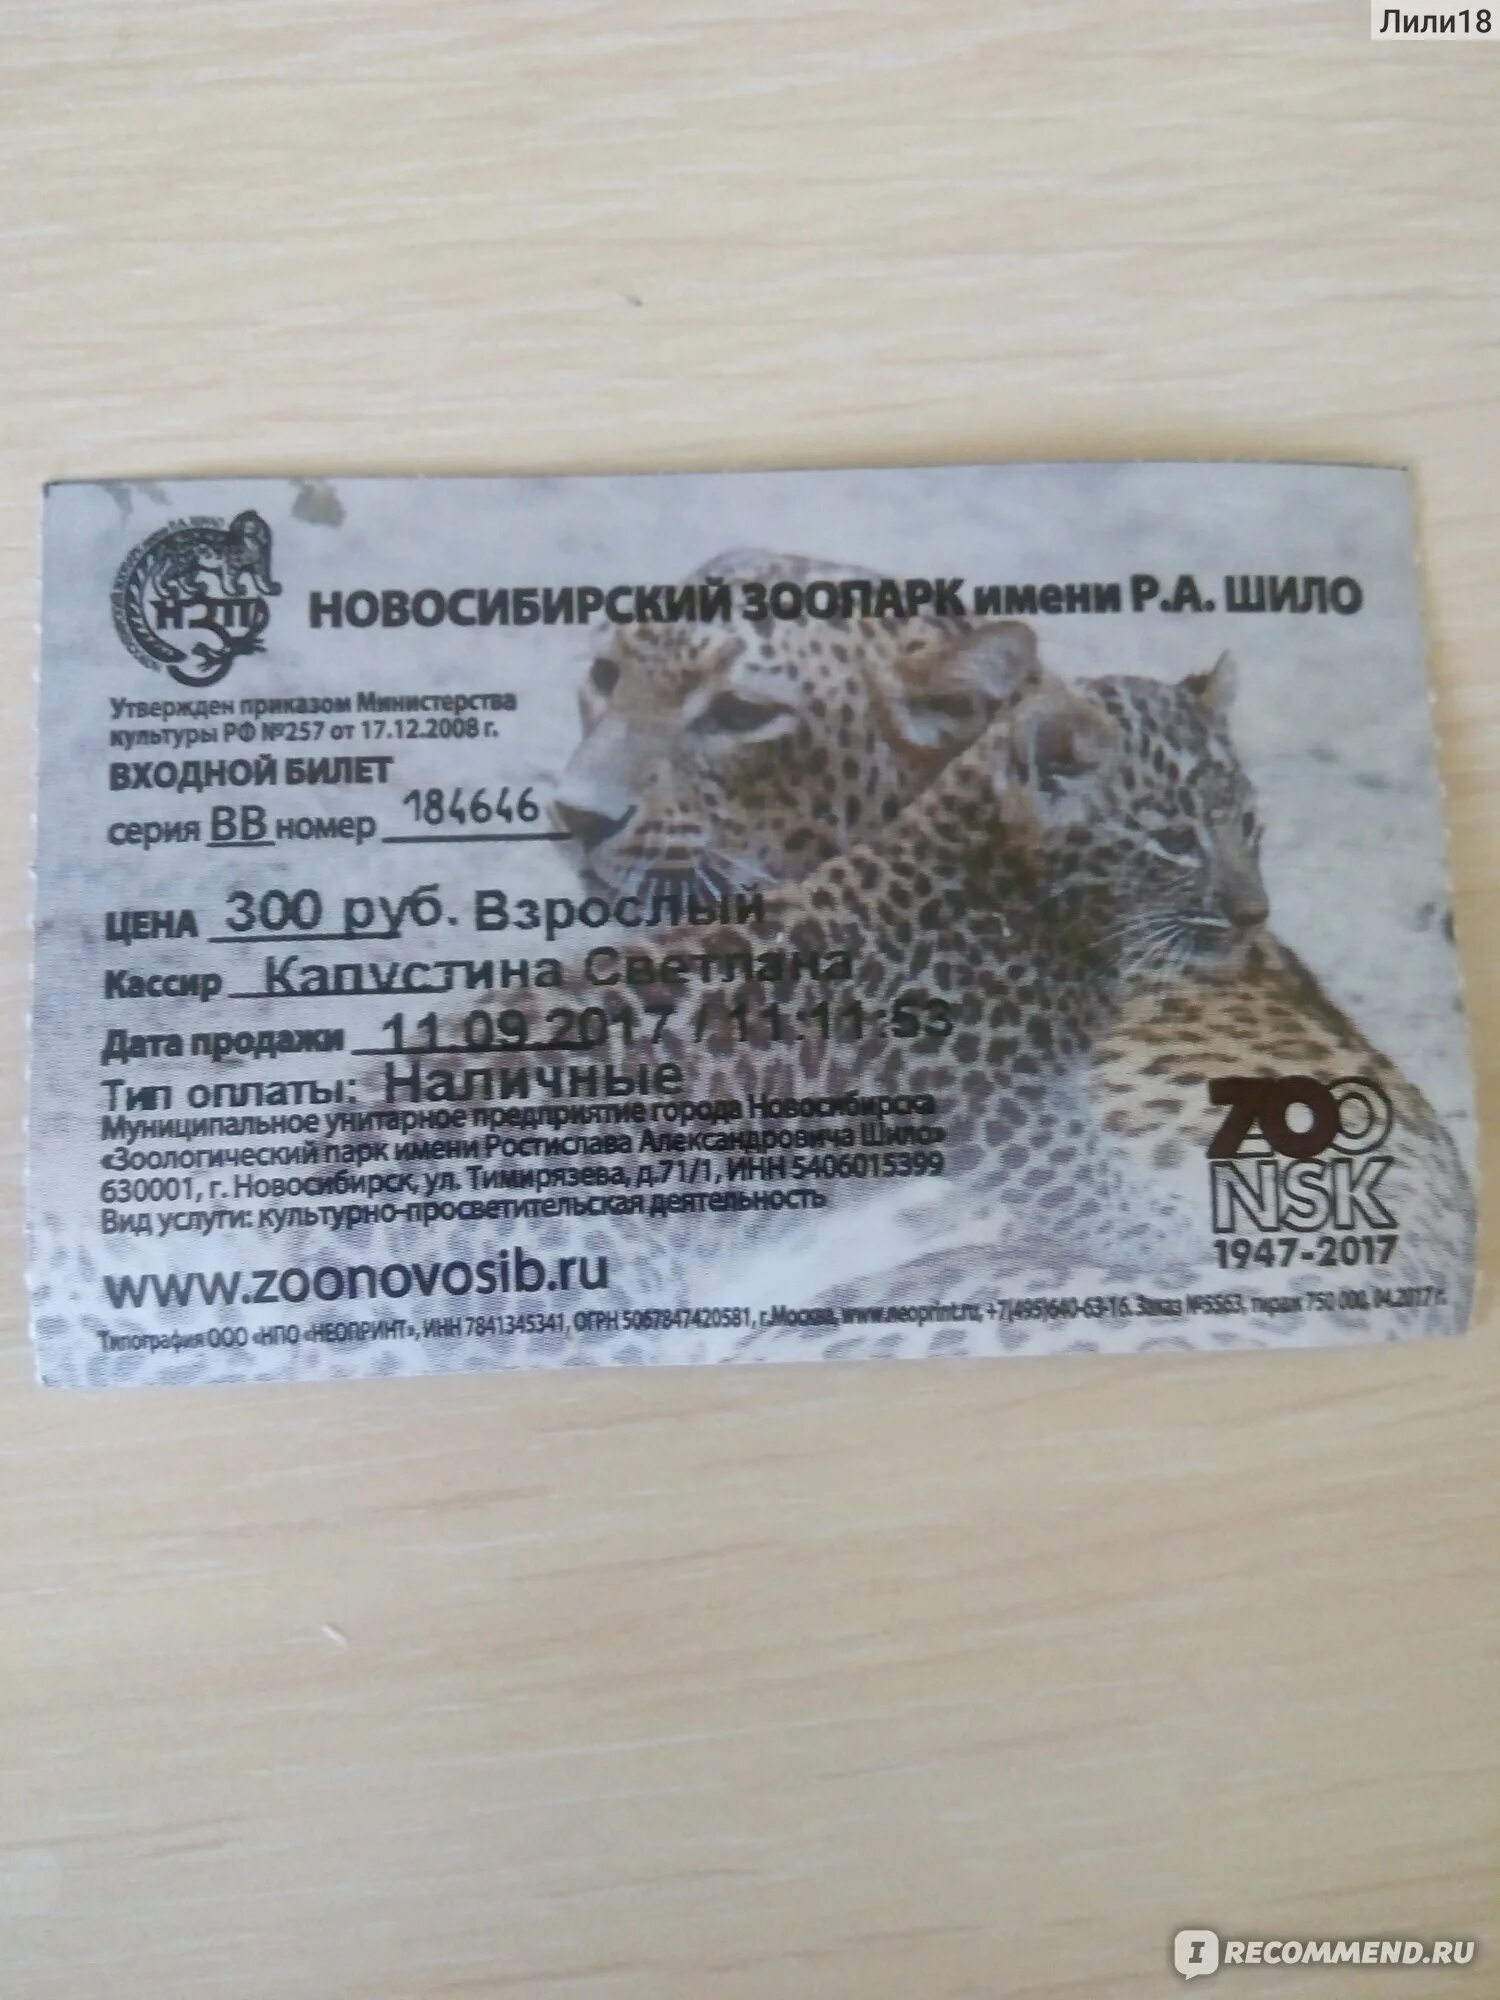 Сколько стоит билет в новосибирском зоопарке